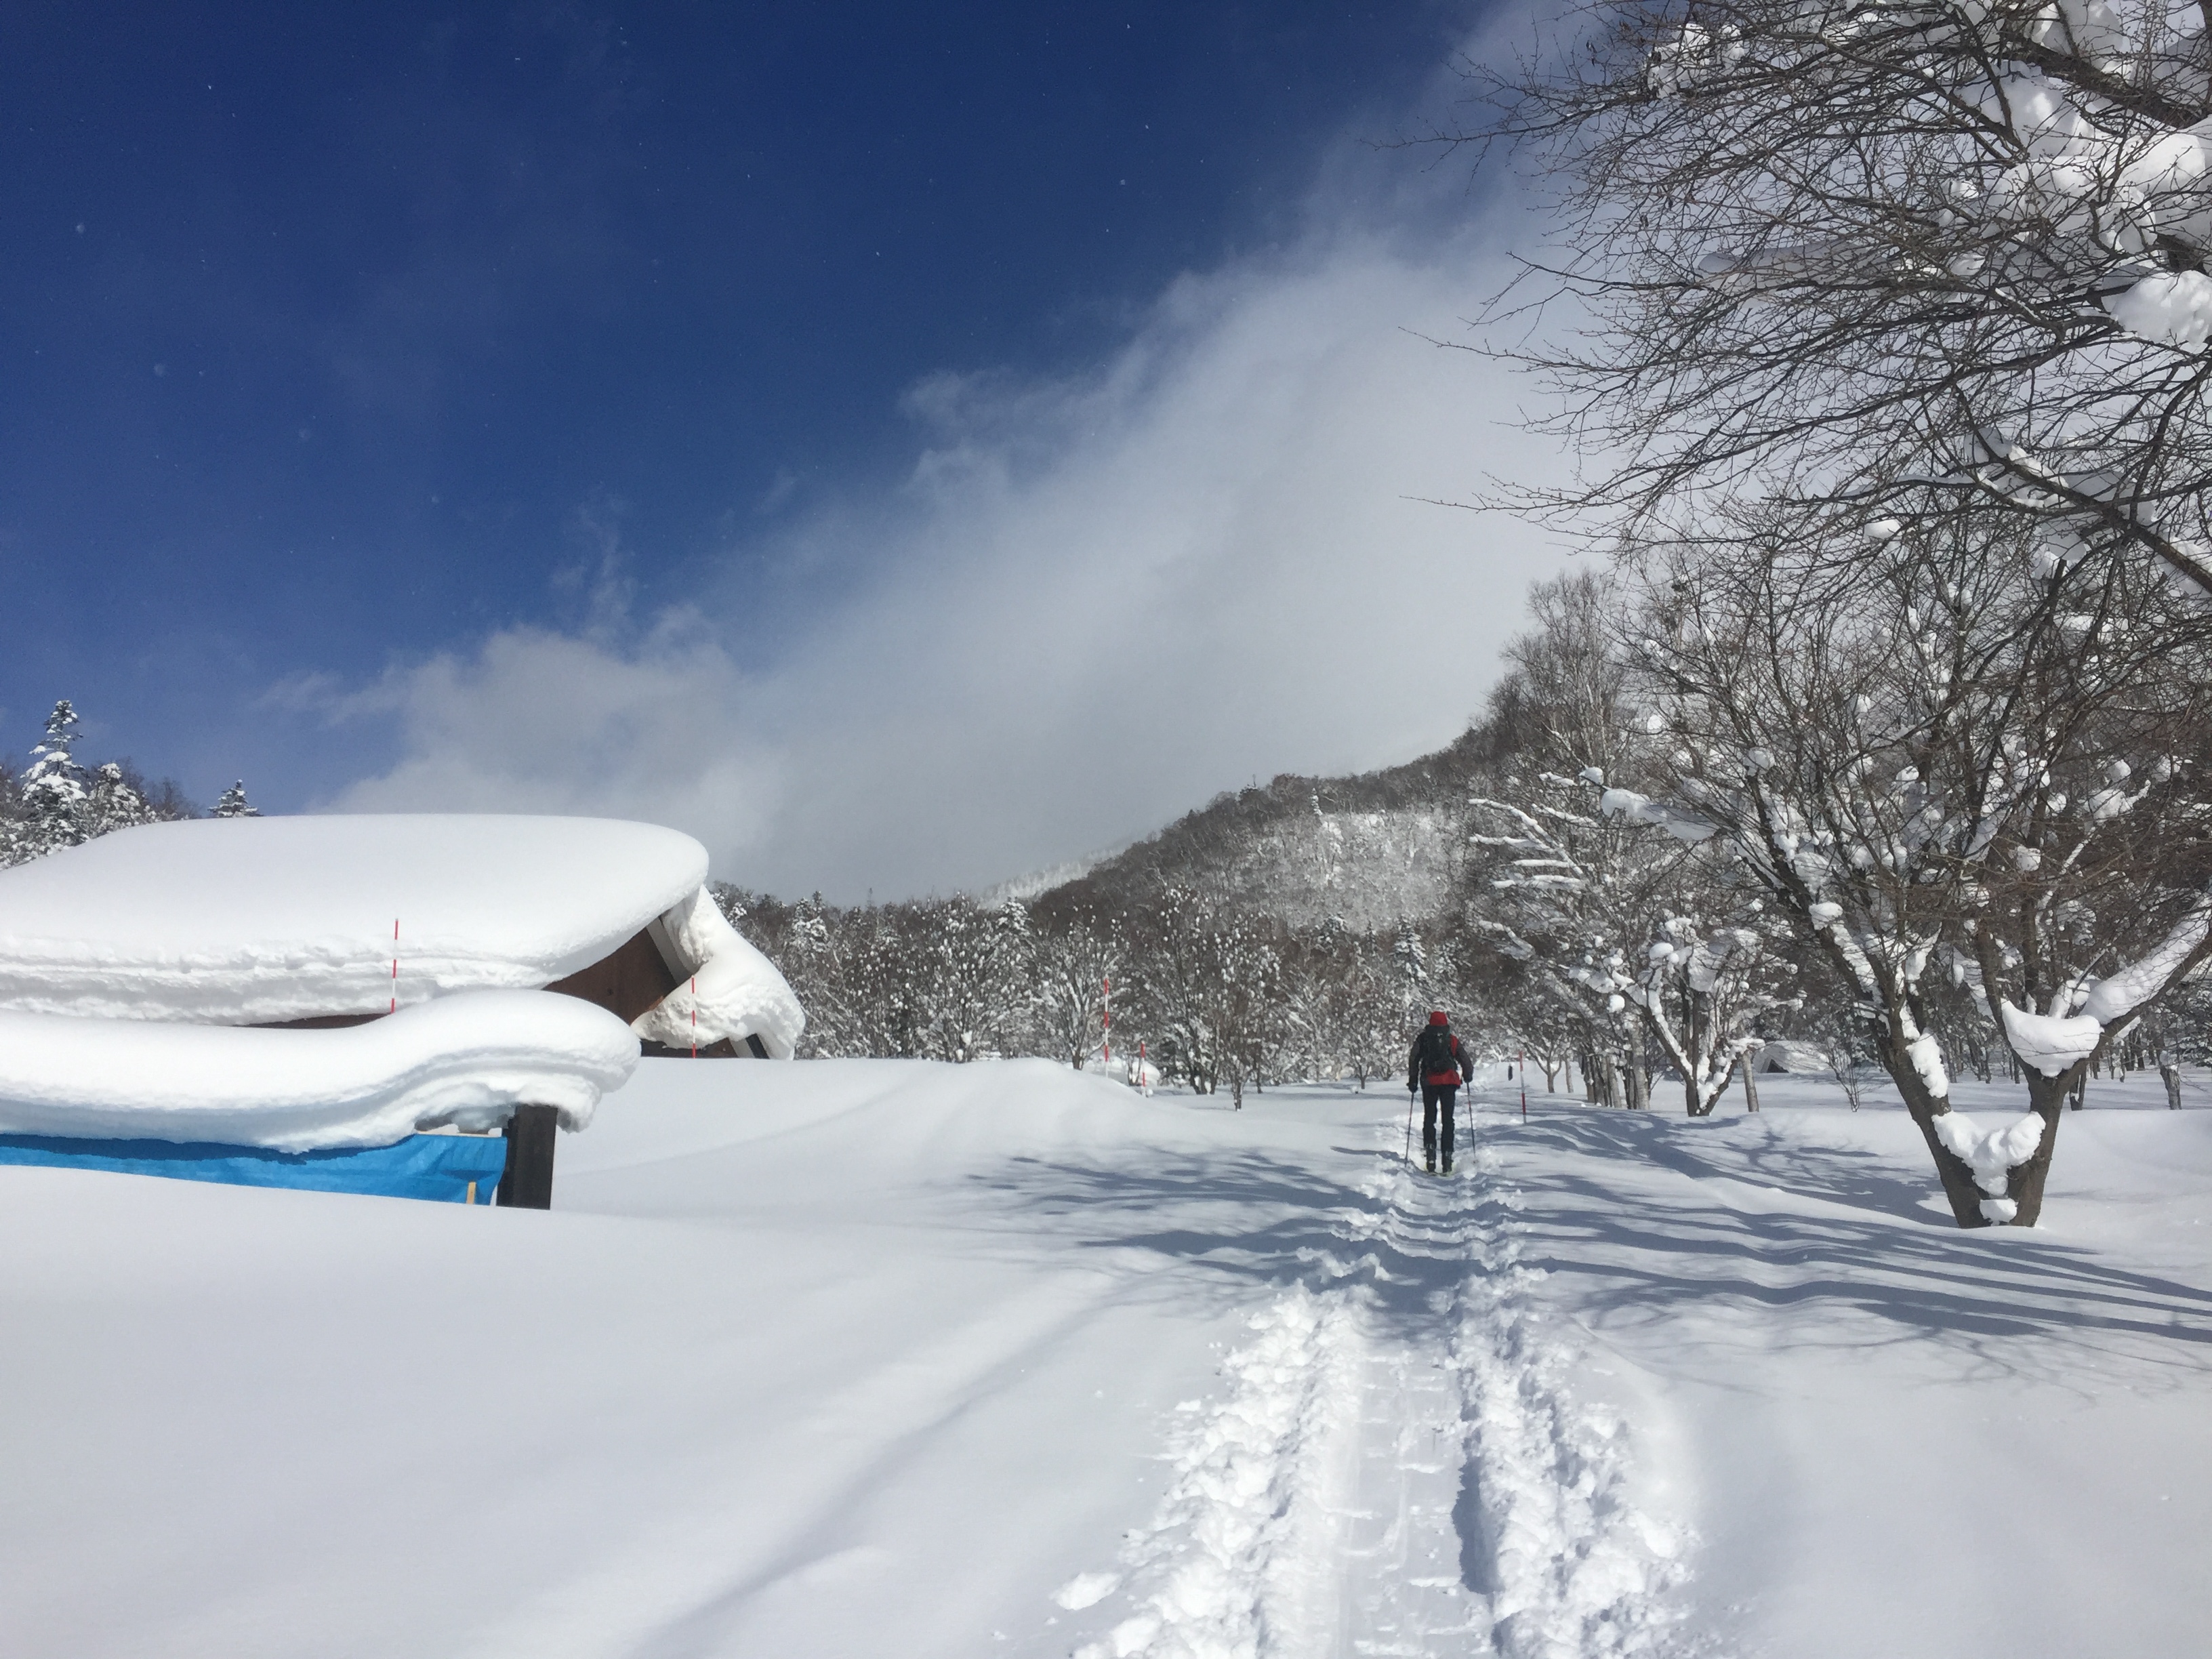 trazado den la nieve. Japón